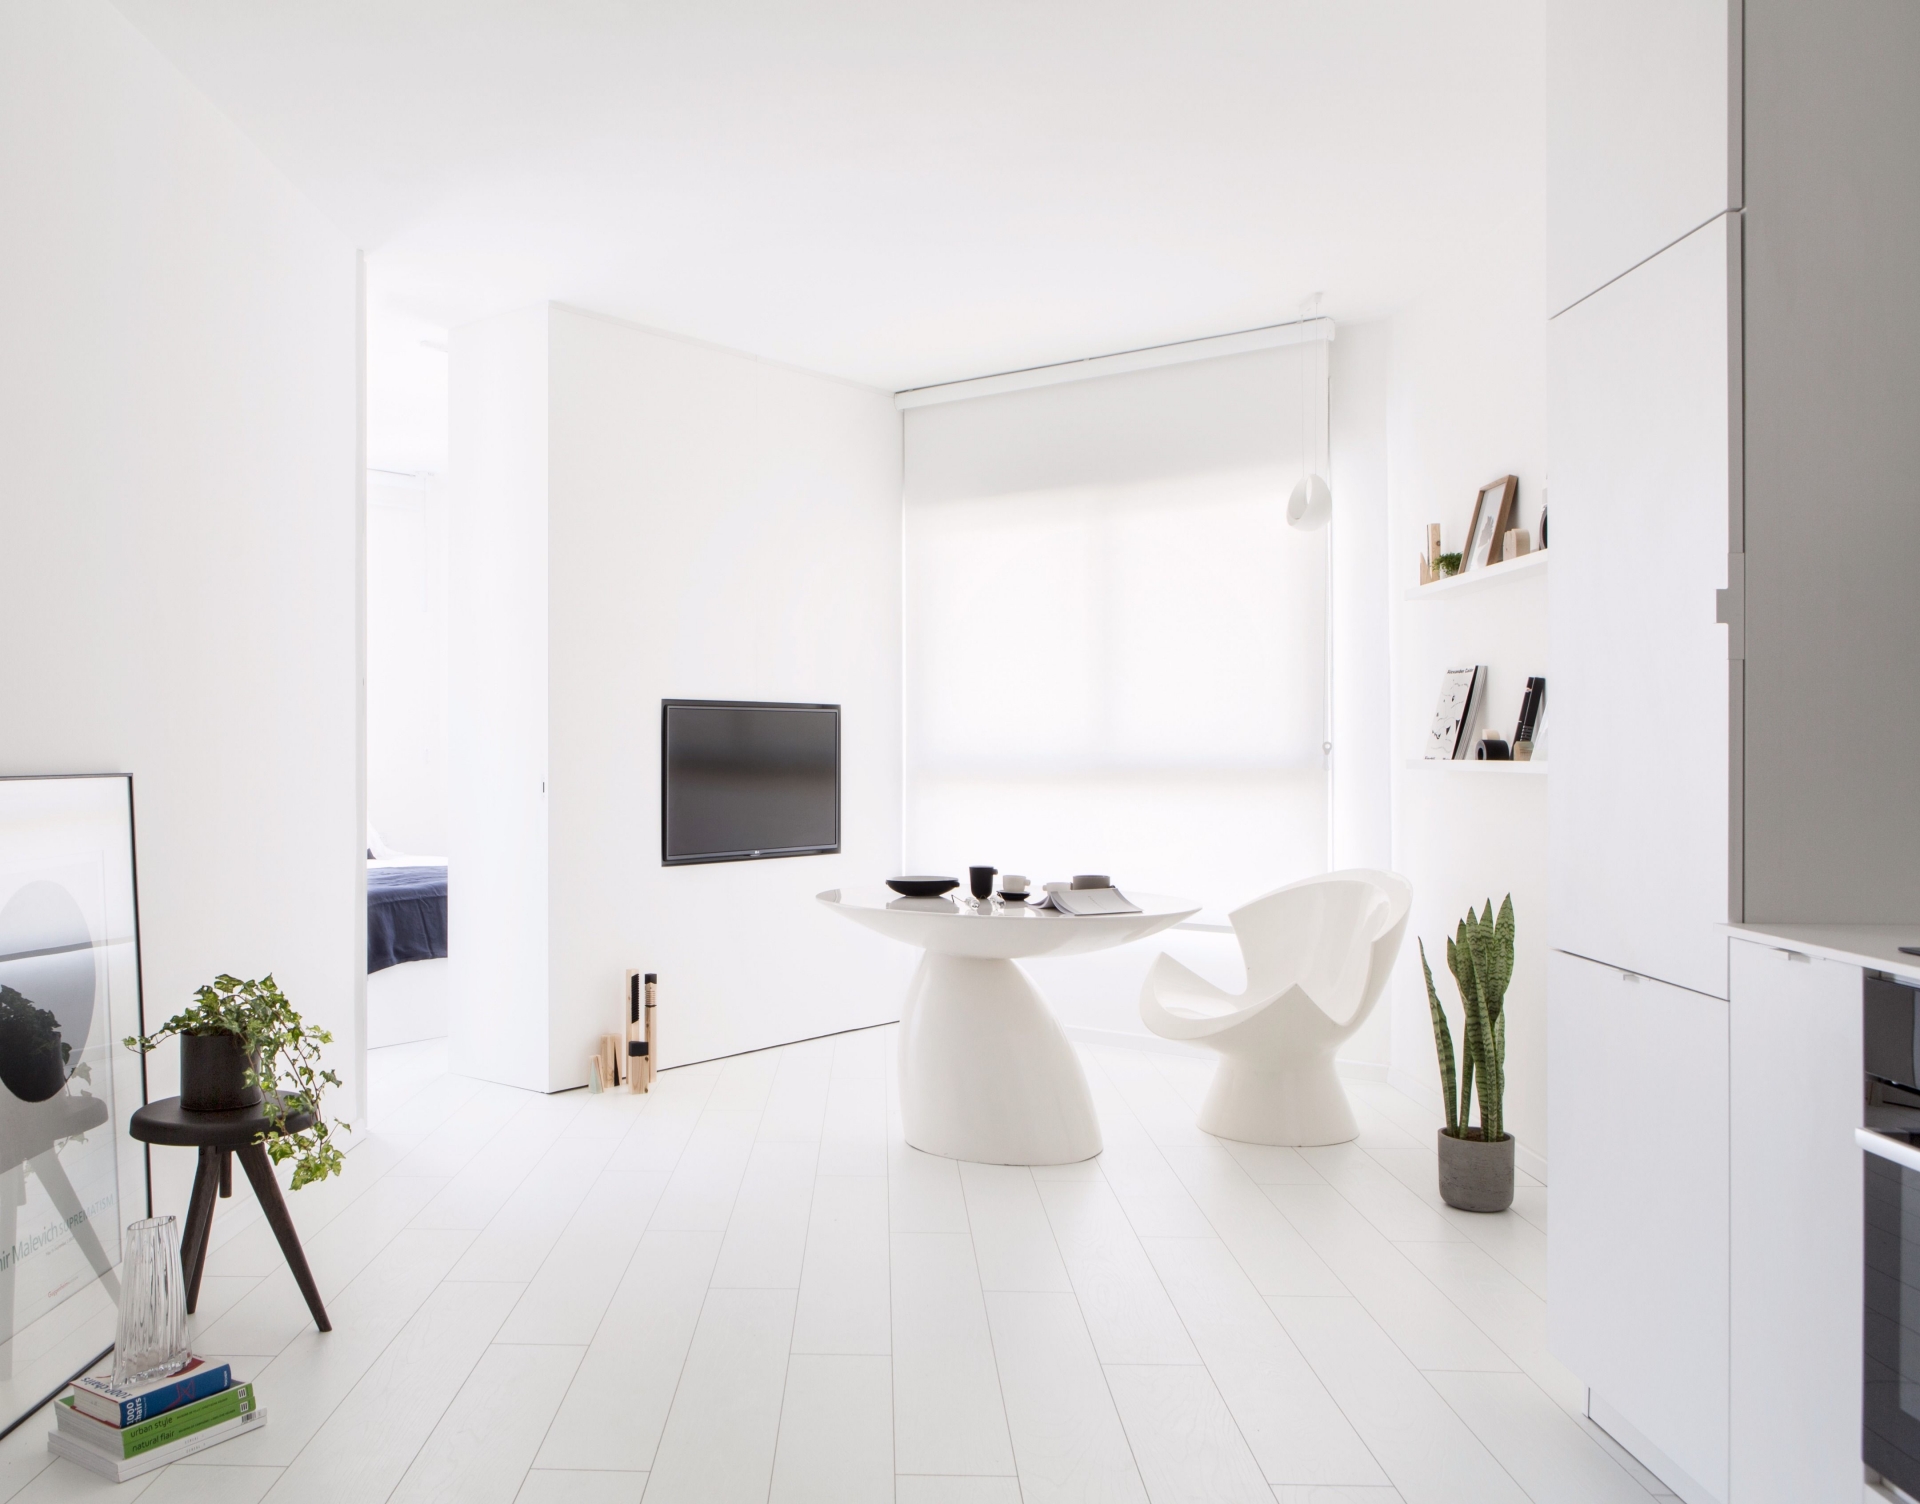 Căn hộ nhỏ với diện tích 42m² sử dụng gam màu trắng chủ đạo, được thiết kế theo phong cách tối giản và có đầy đủ những món nội thất và phụ kiện cần thiết nhất cho gia chủ.